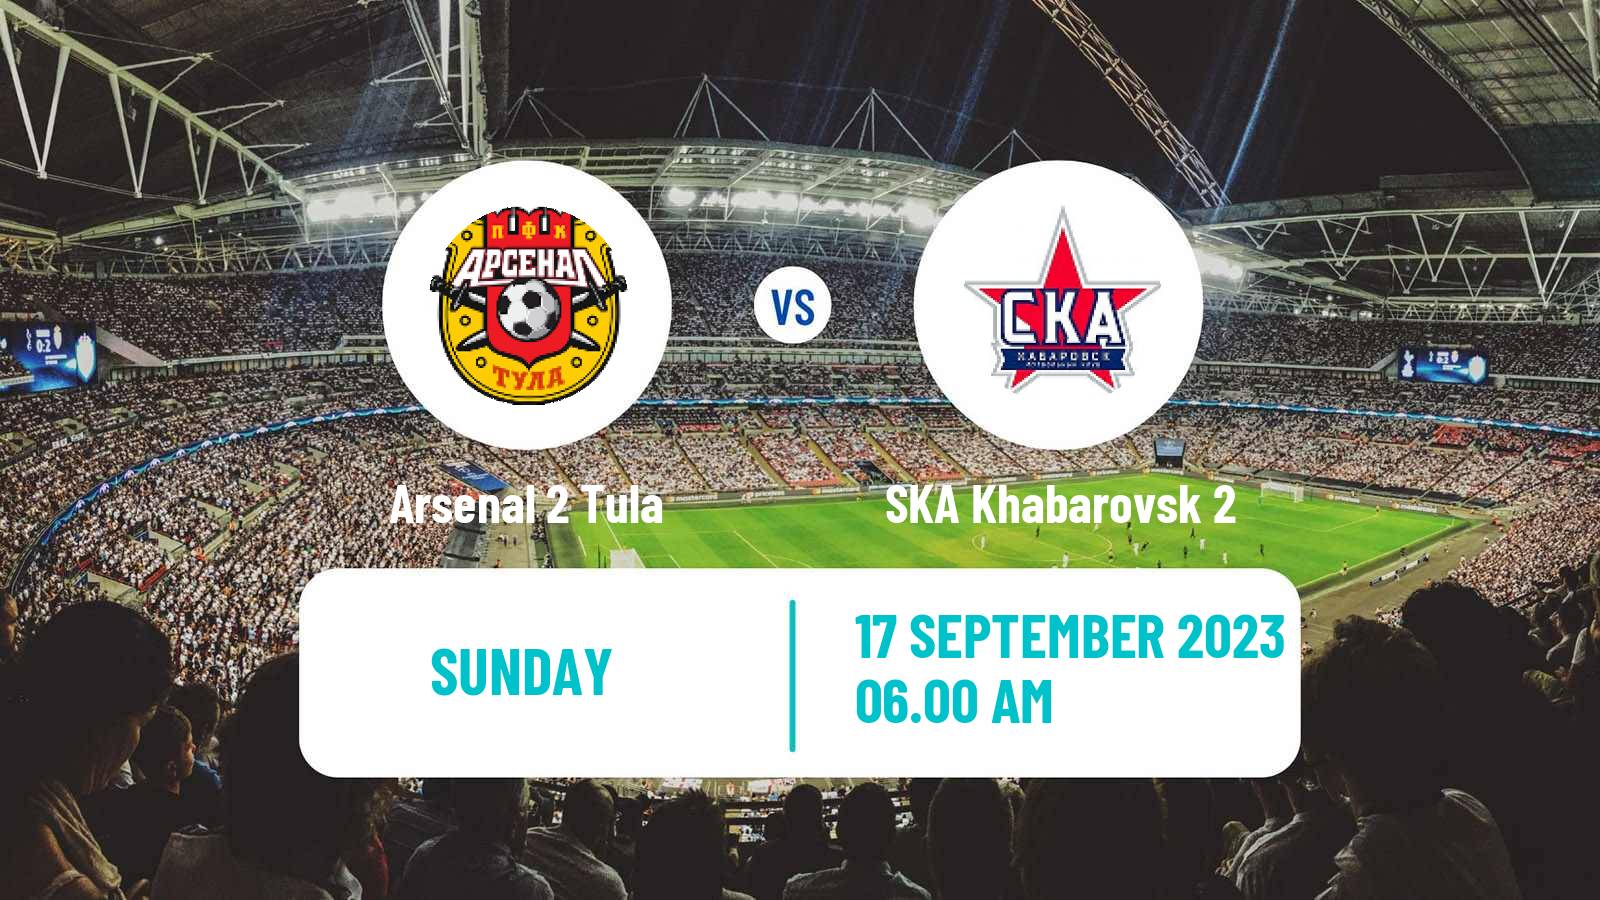 Soccer FNL 2 Division B Group 3 Arsenal 2 Tula - SKA Khabarovsk 2